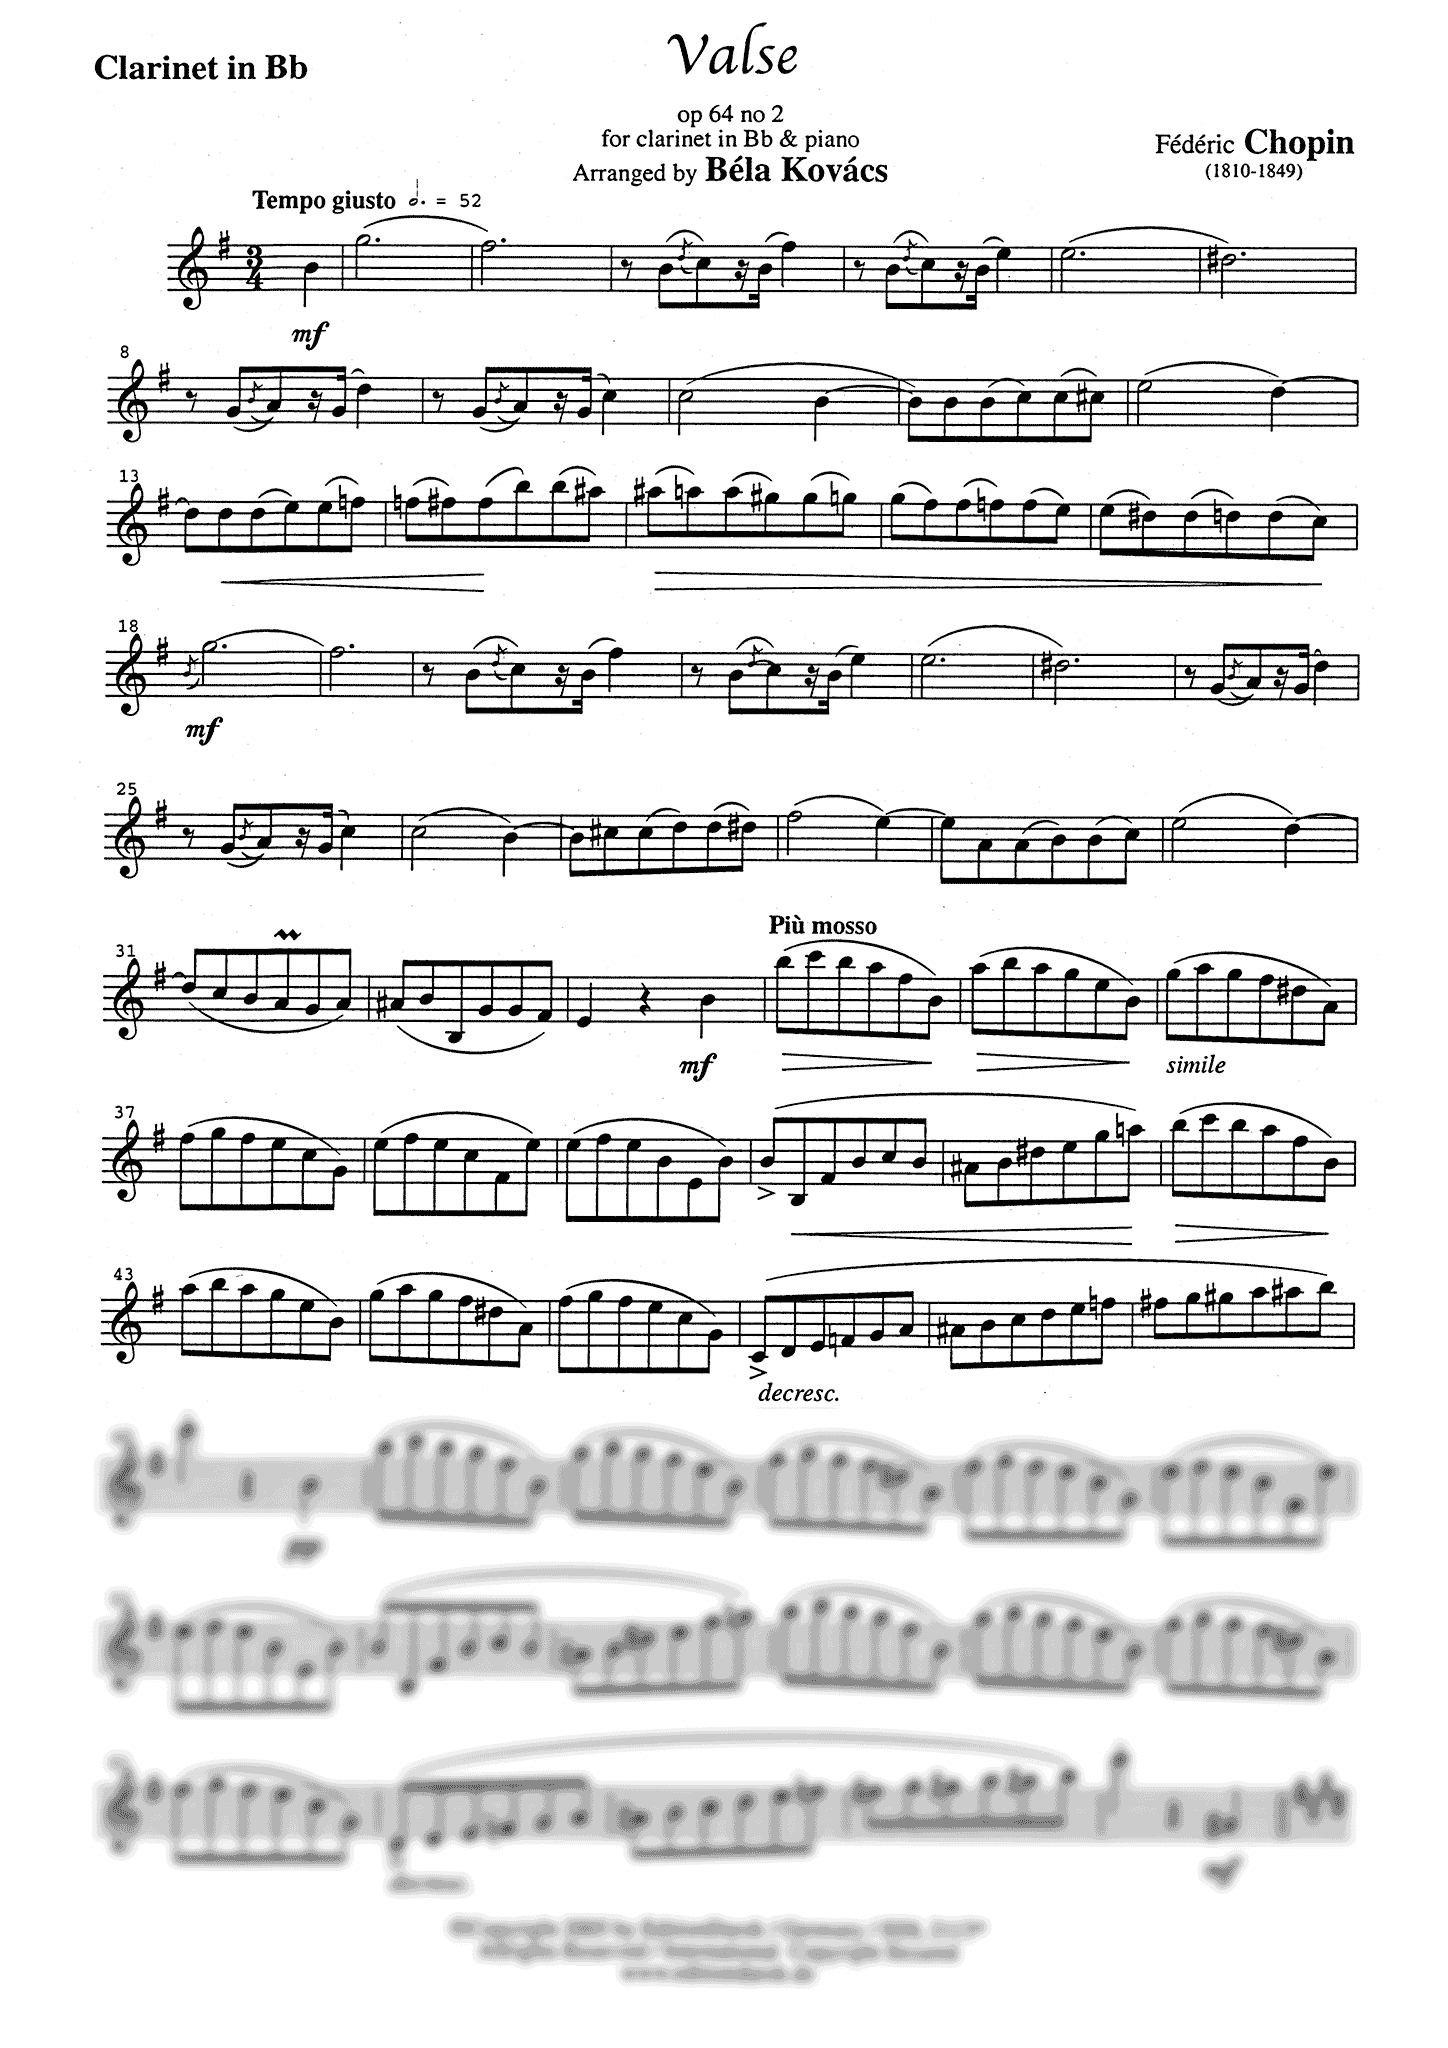 Chopin Waltz Op. 64 No. 2 Clarinet part